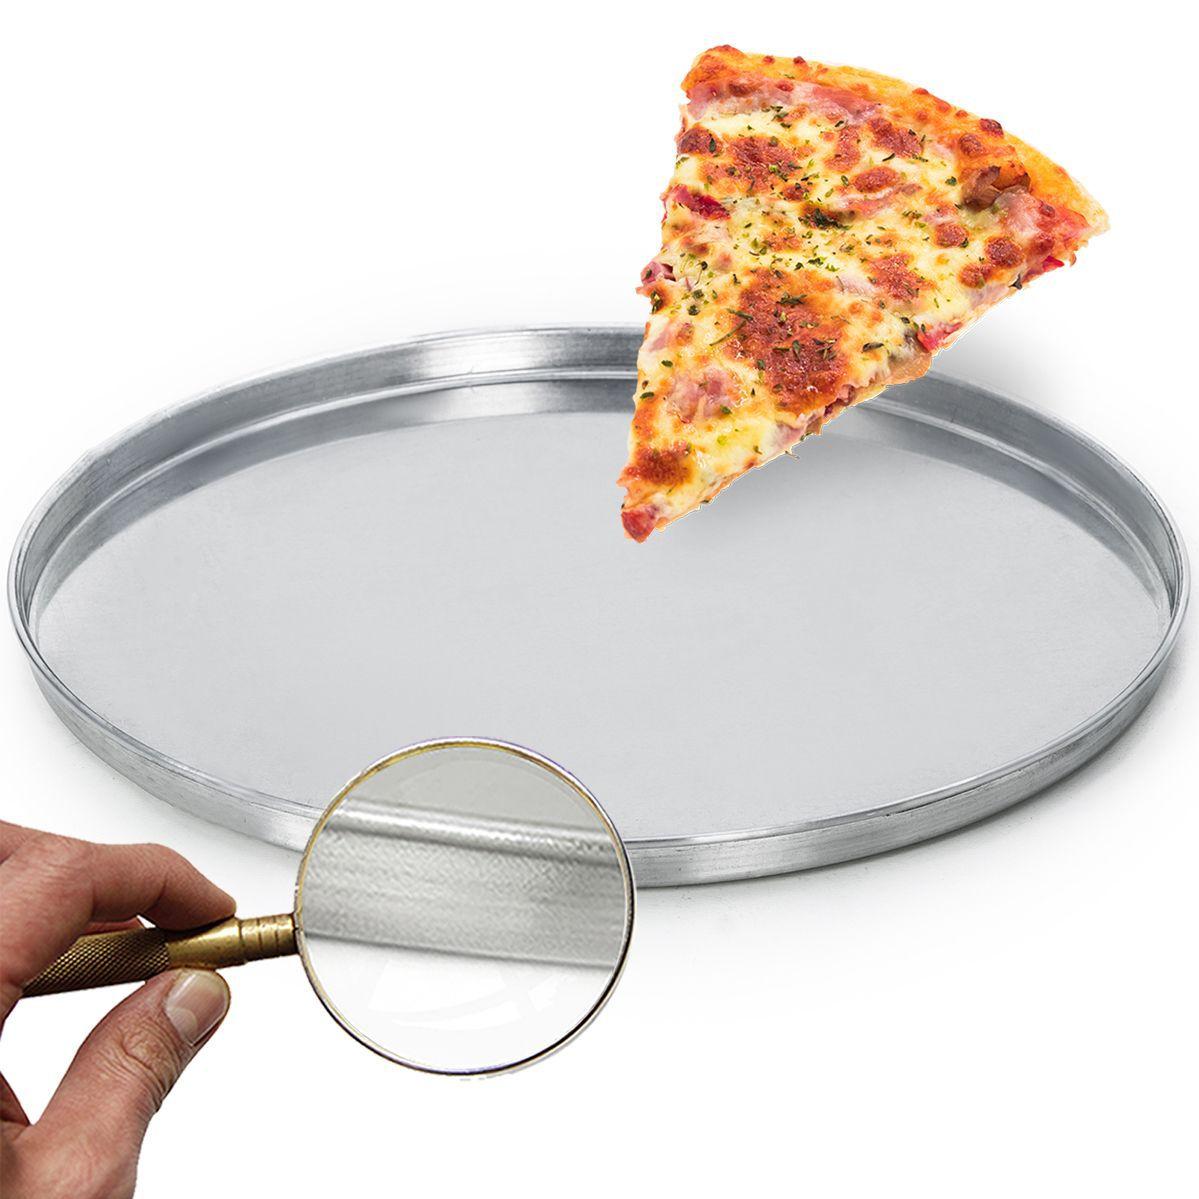 нужно ли чтобы тесто поднялось для пиццы фото 69